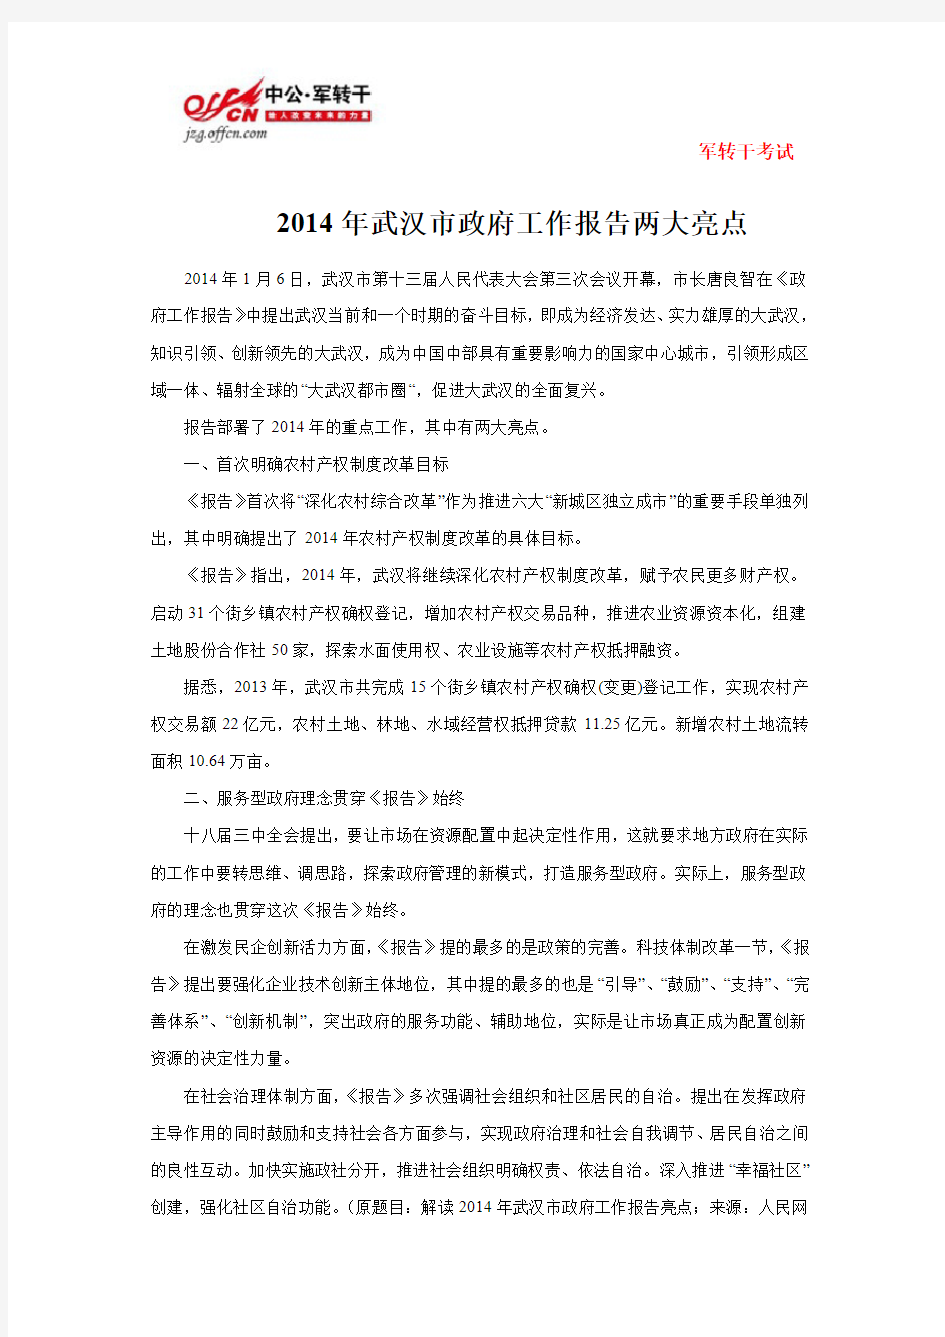 2014年武汉市政府工作报告两大亮点